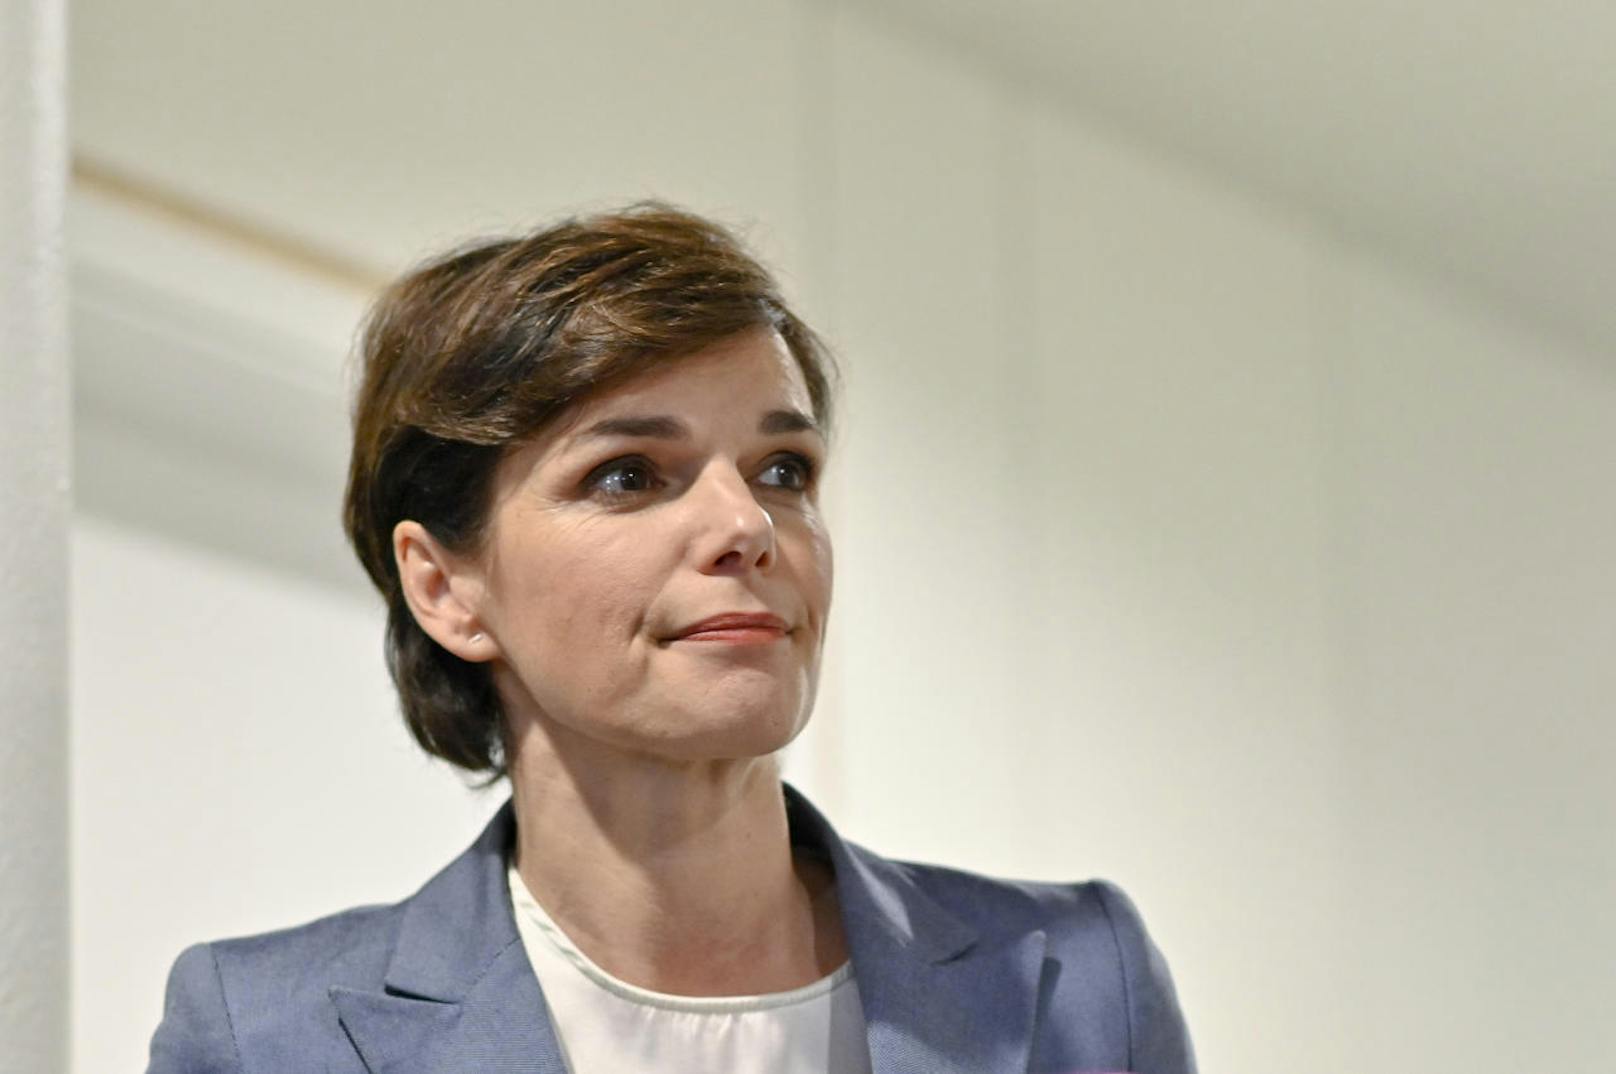 Direkt nach Bekanntwerden der Kündigungs-E-Mails an SPÖ-Mitarbeiter der Parteizentrale in der Wiener Löwelstraße wurden Gerüchte laut, dass SPÖ-Chefin Pamela Rendi-Wagner direkt vor ihrem Rücktritt steht.